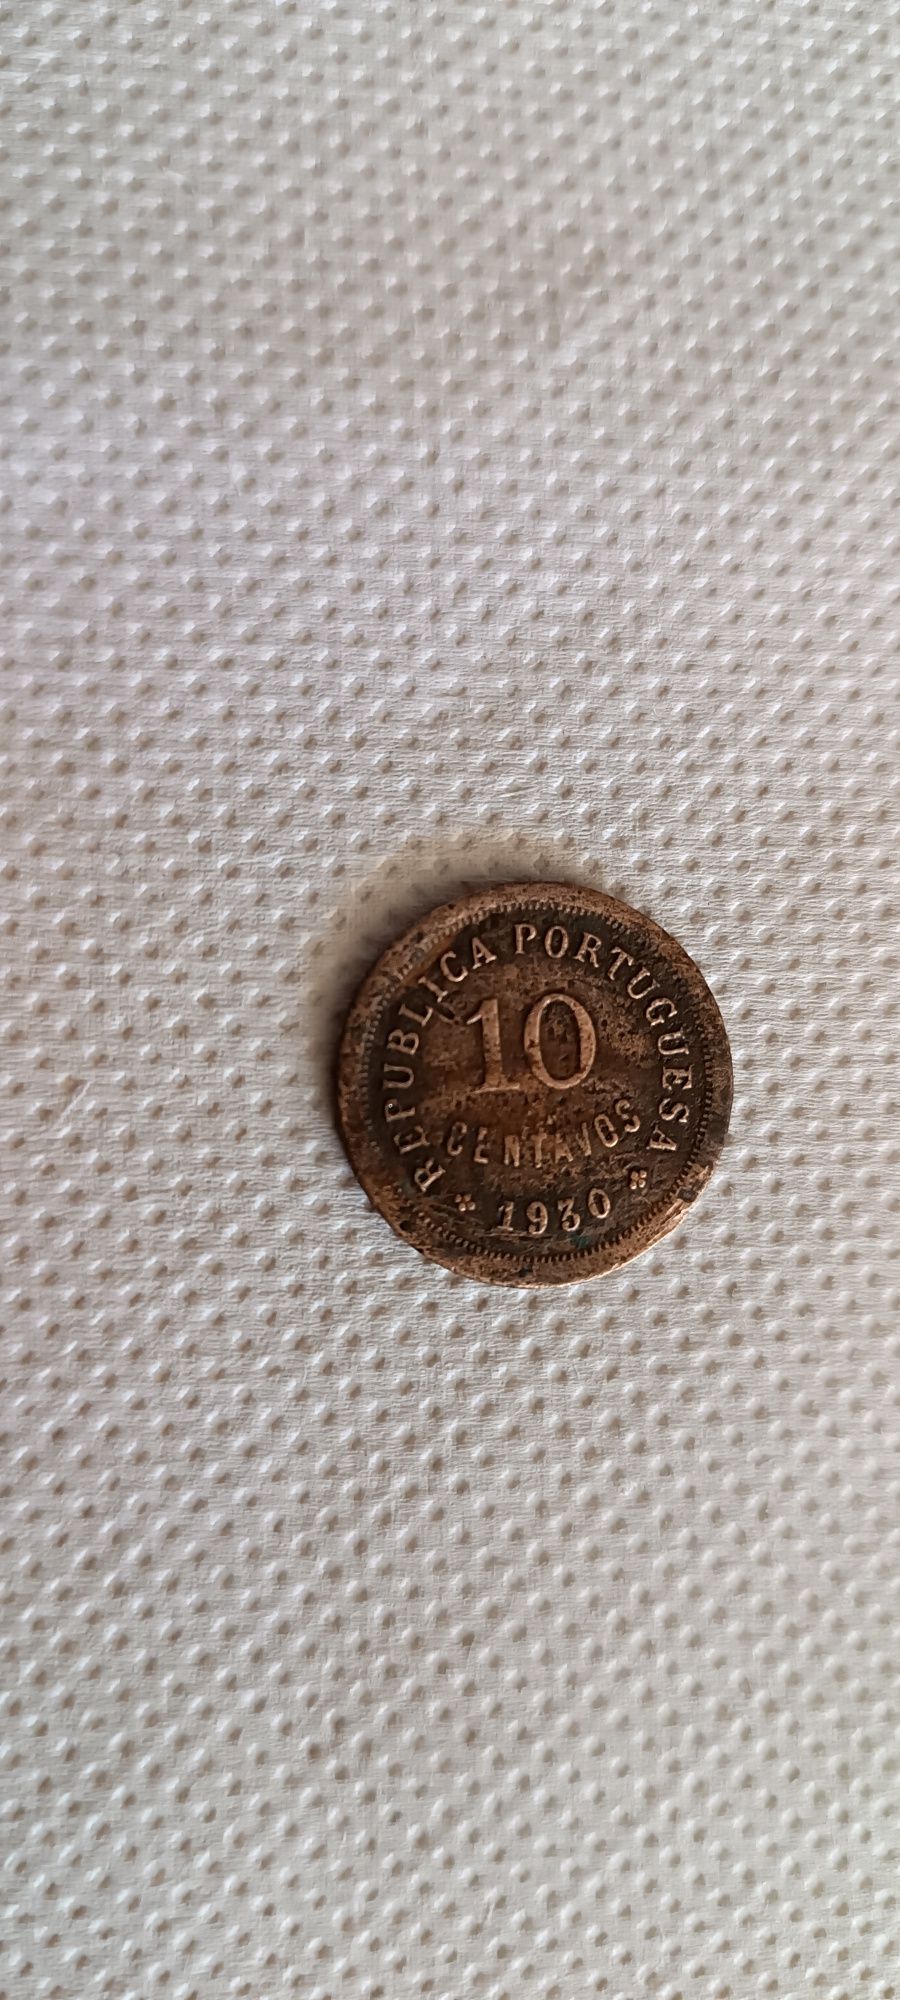 10 centavos Original de 1930, encontrados subterrado